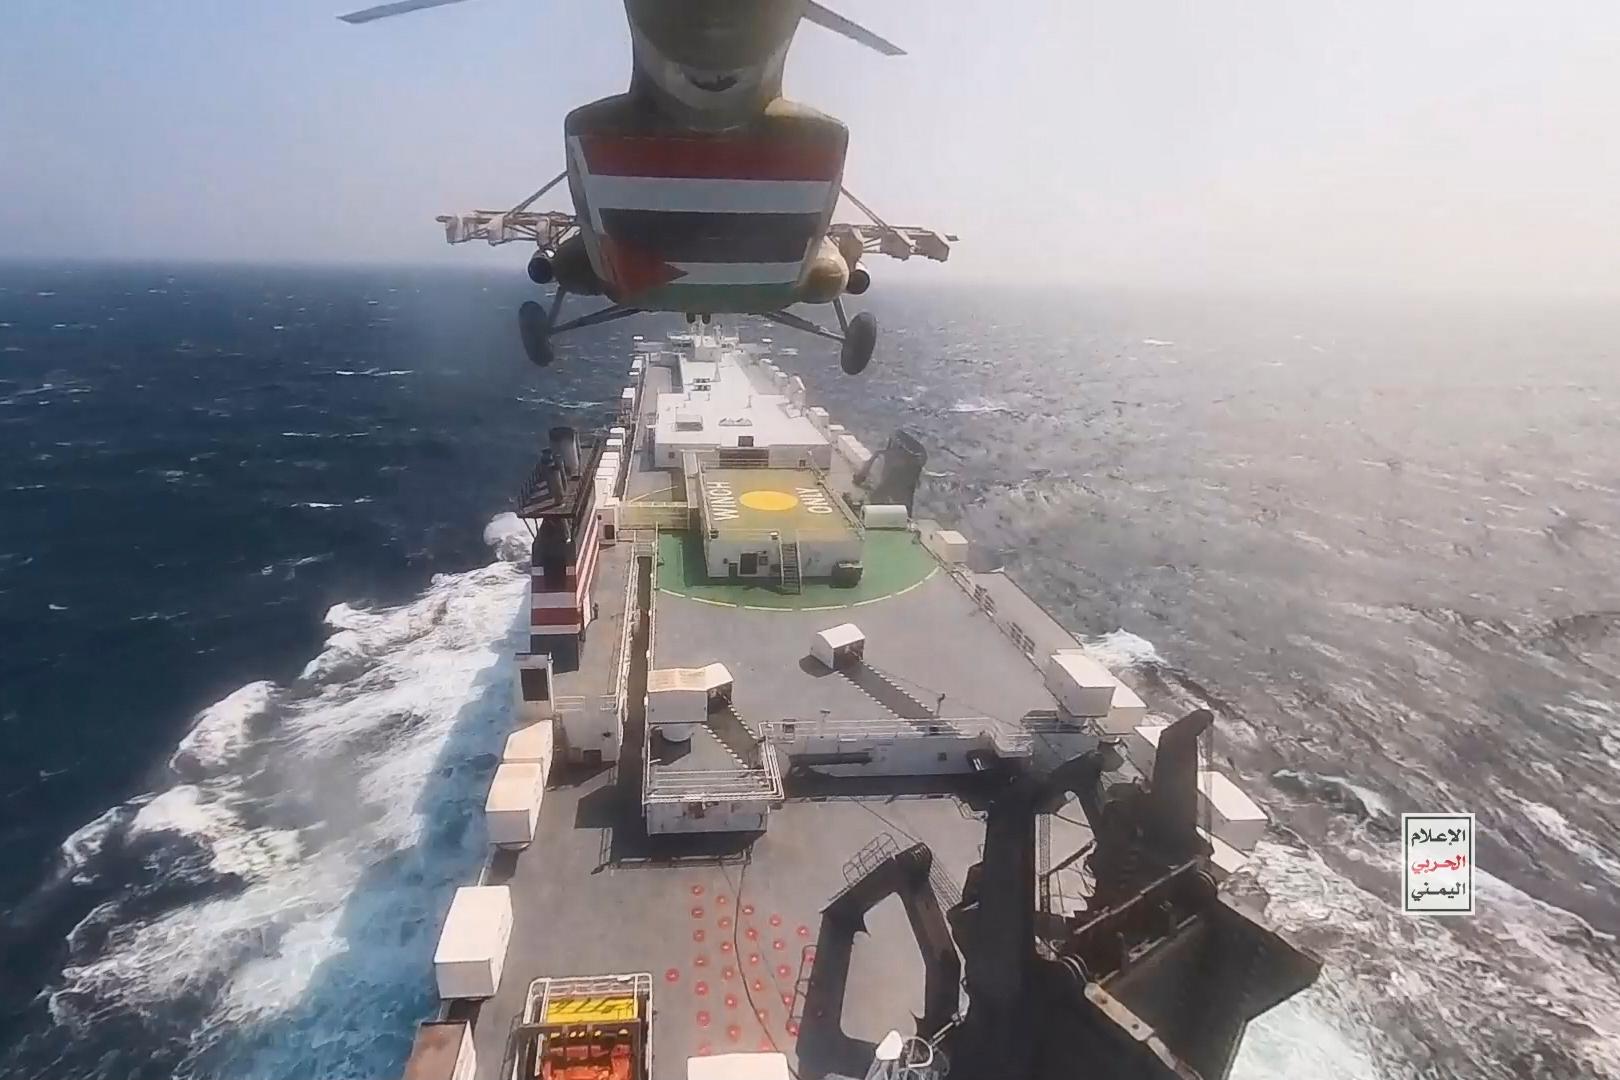 Foto släppt av Huthi-rebellerna som visar hur en av deras helikoptrar närmar sig lastfartyget Galaxy Leader den 19 november, startdagen för attackerna mot fartyg på Röda havet.